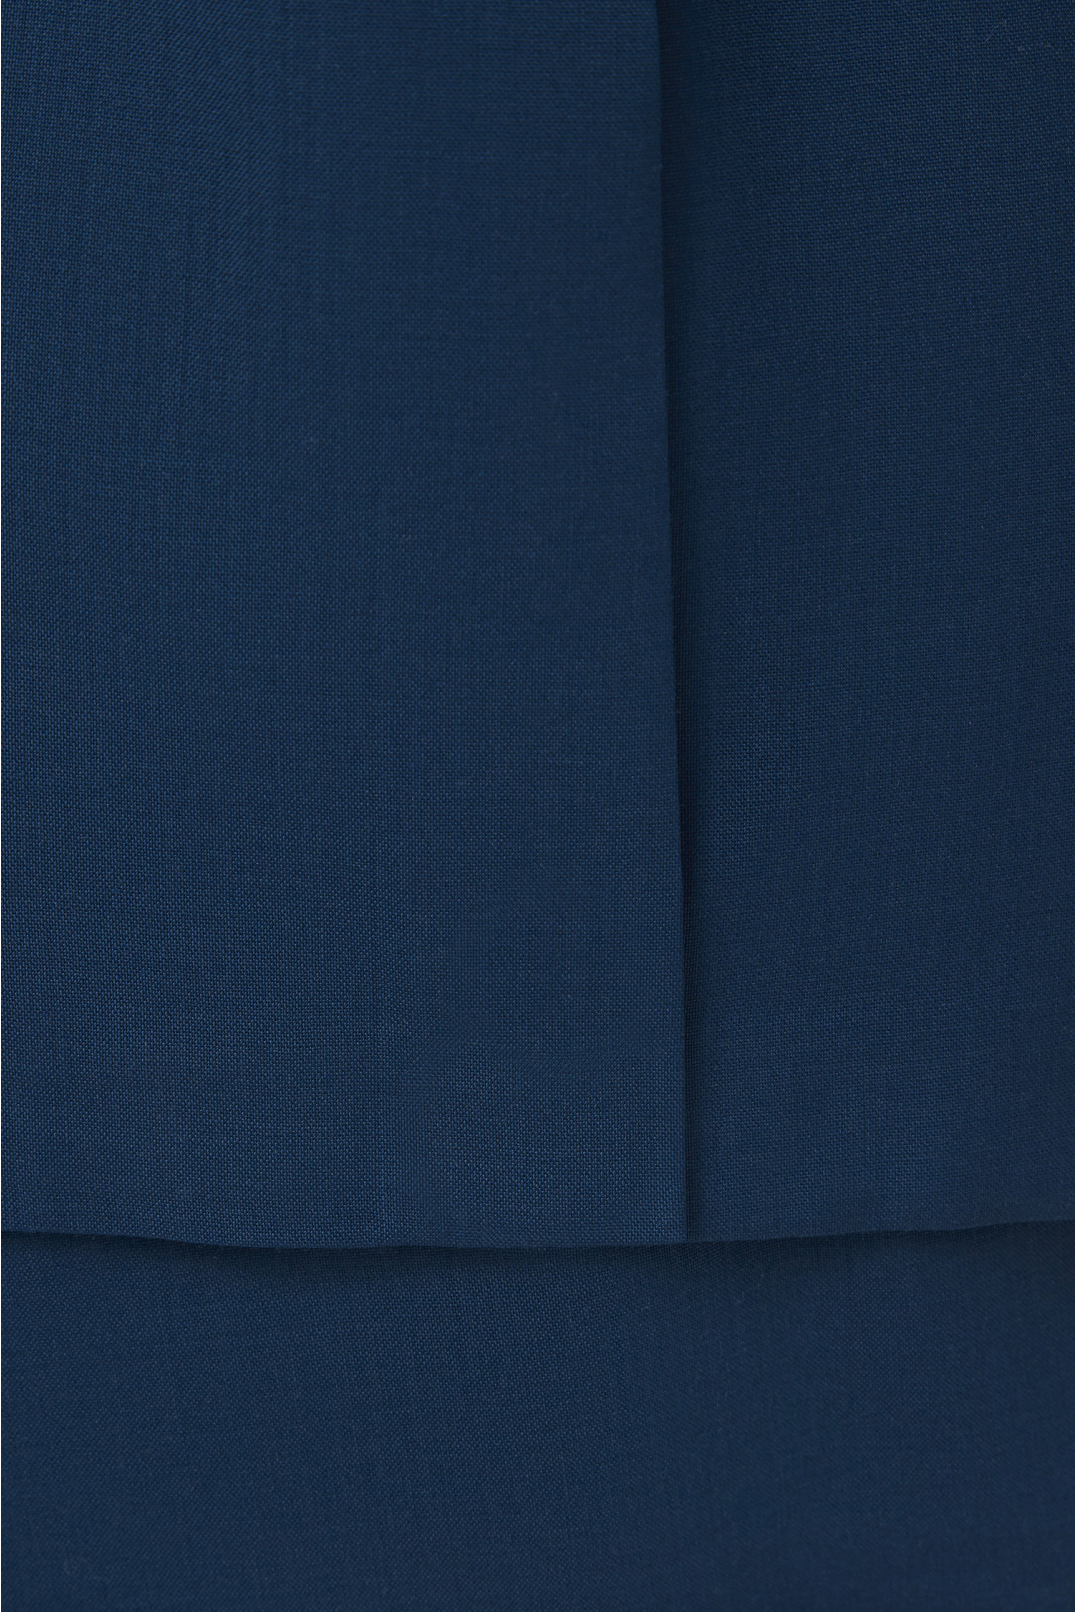 Мужской синий шерстяной костюм (пиджак, брюки) - 4